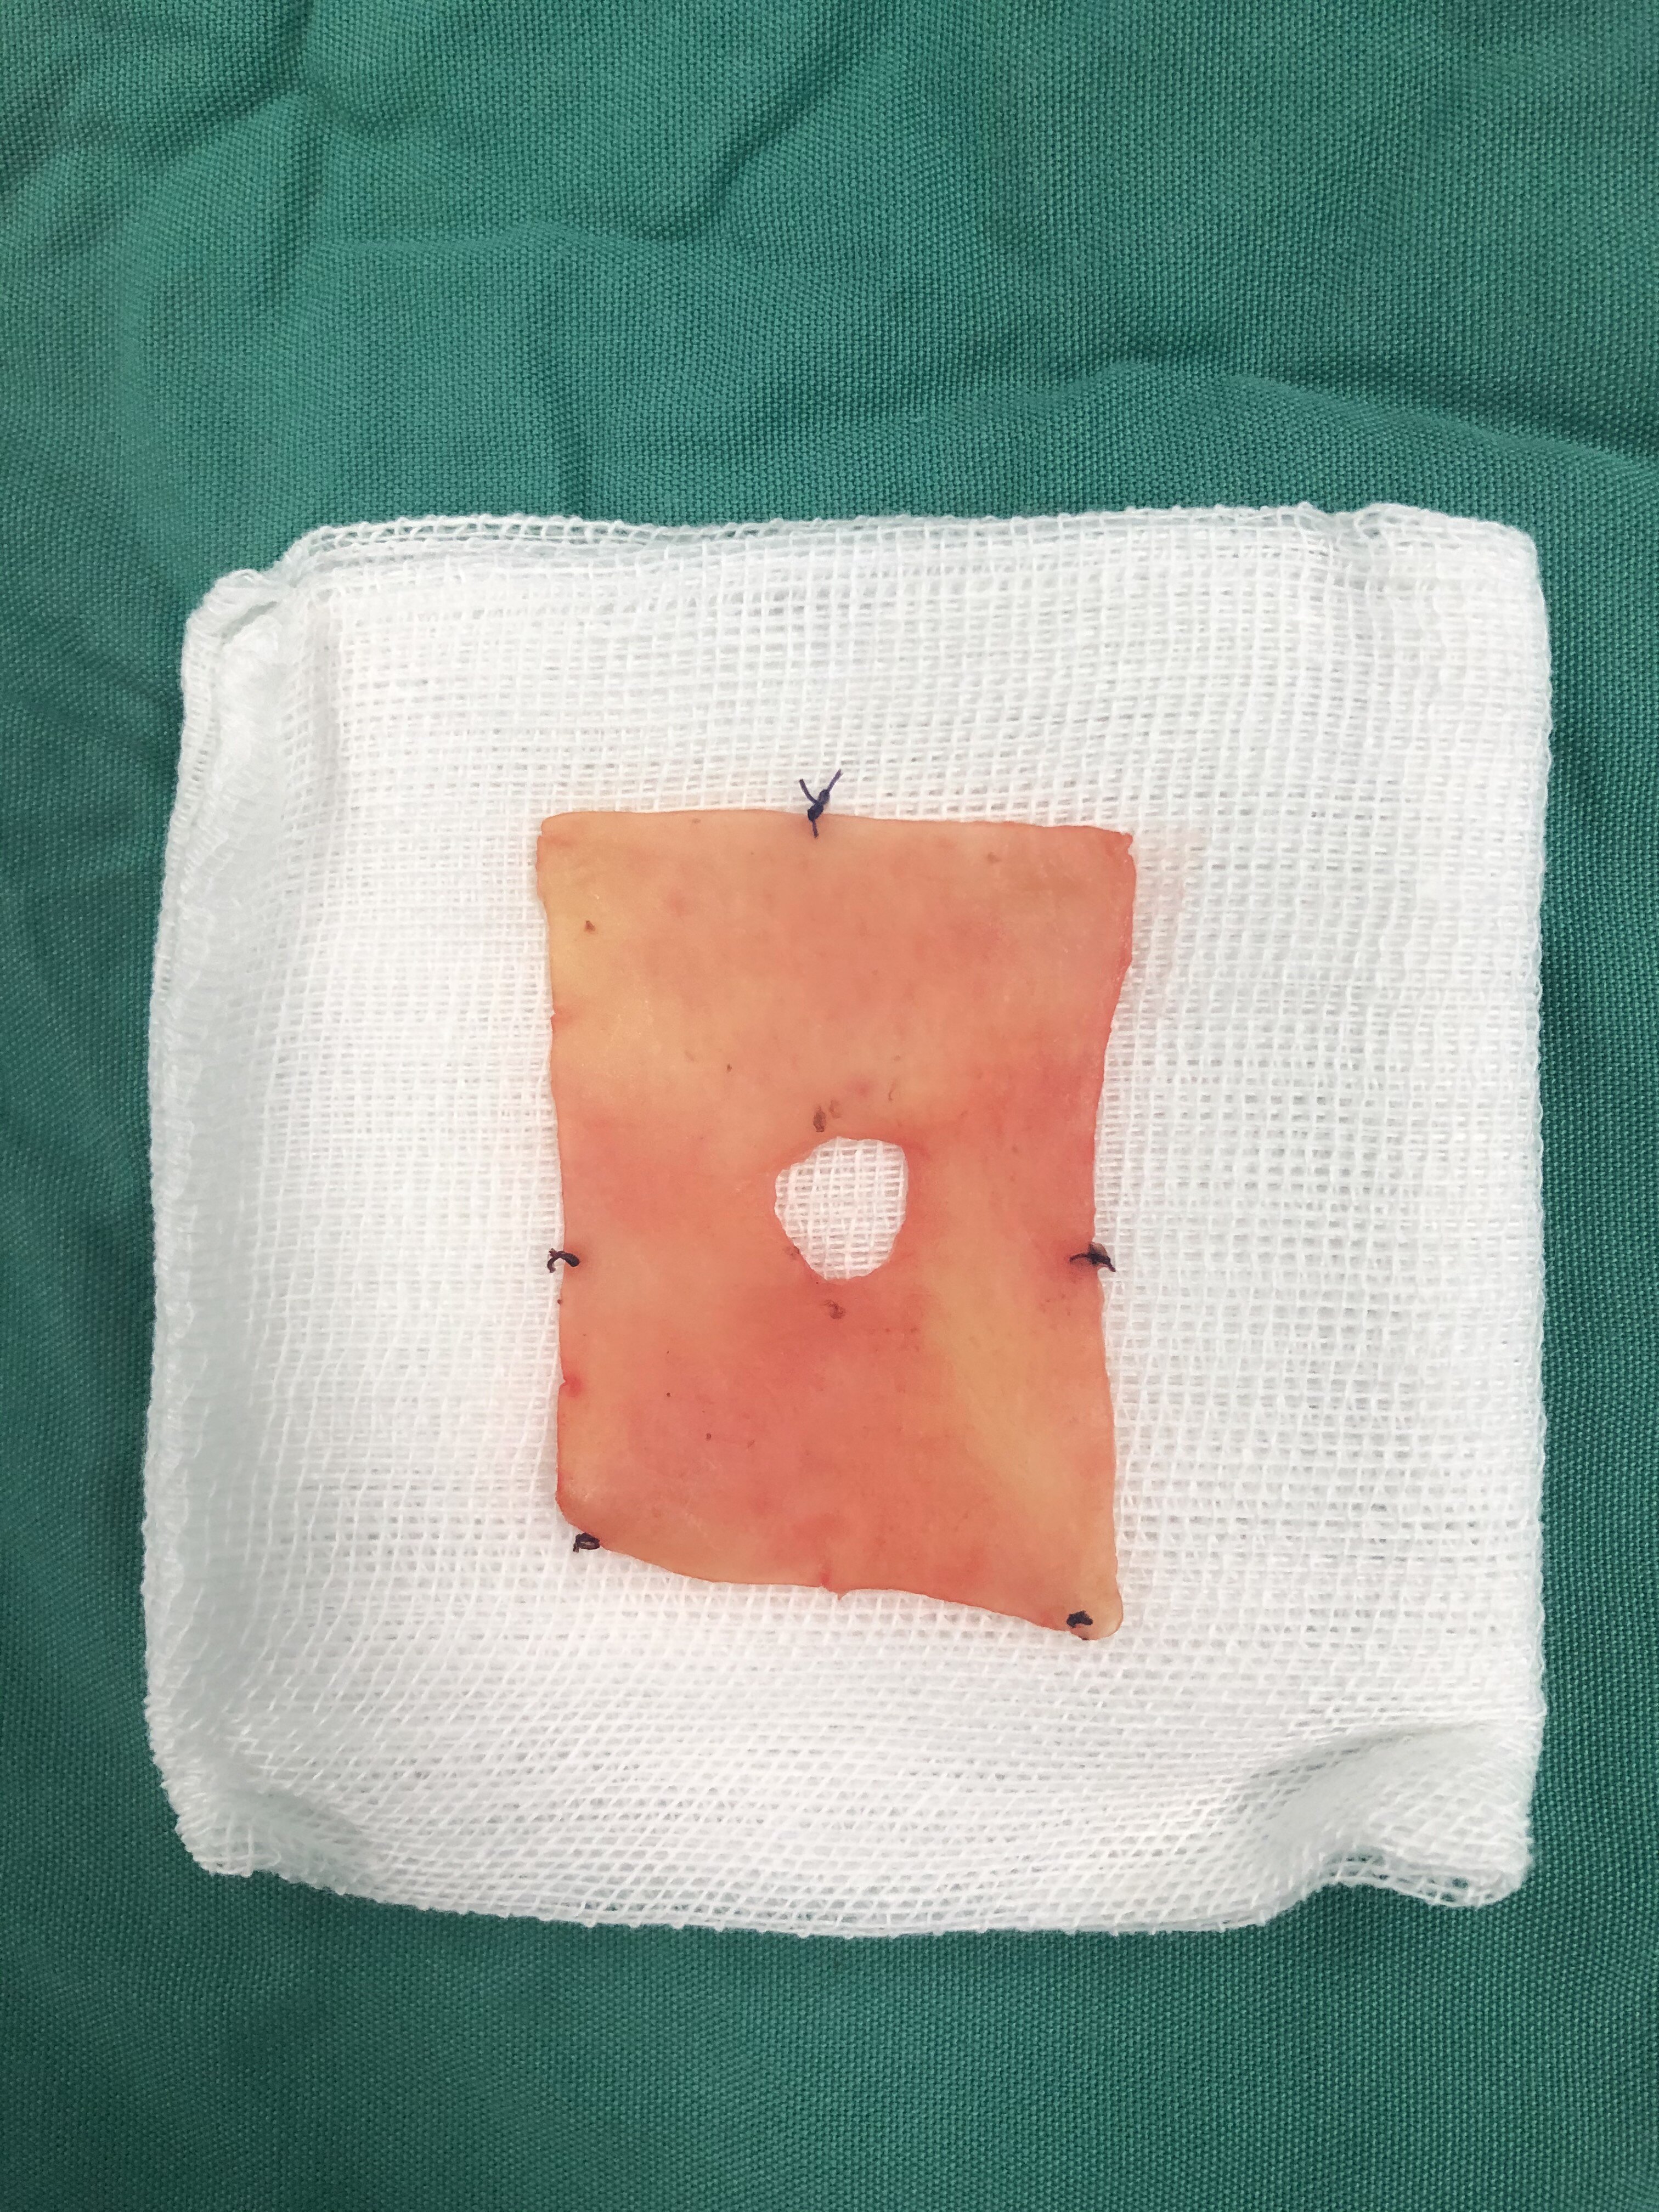 手术工作日志25:阴茎增粗 早泄治疗手术后生物补片取出术